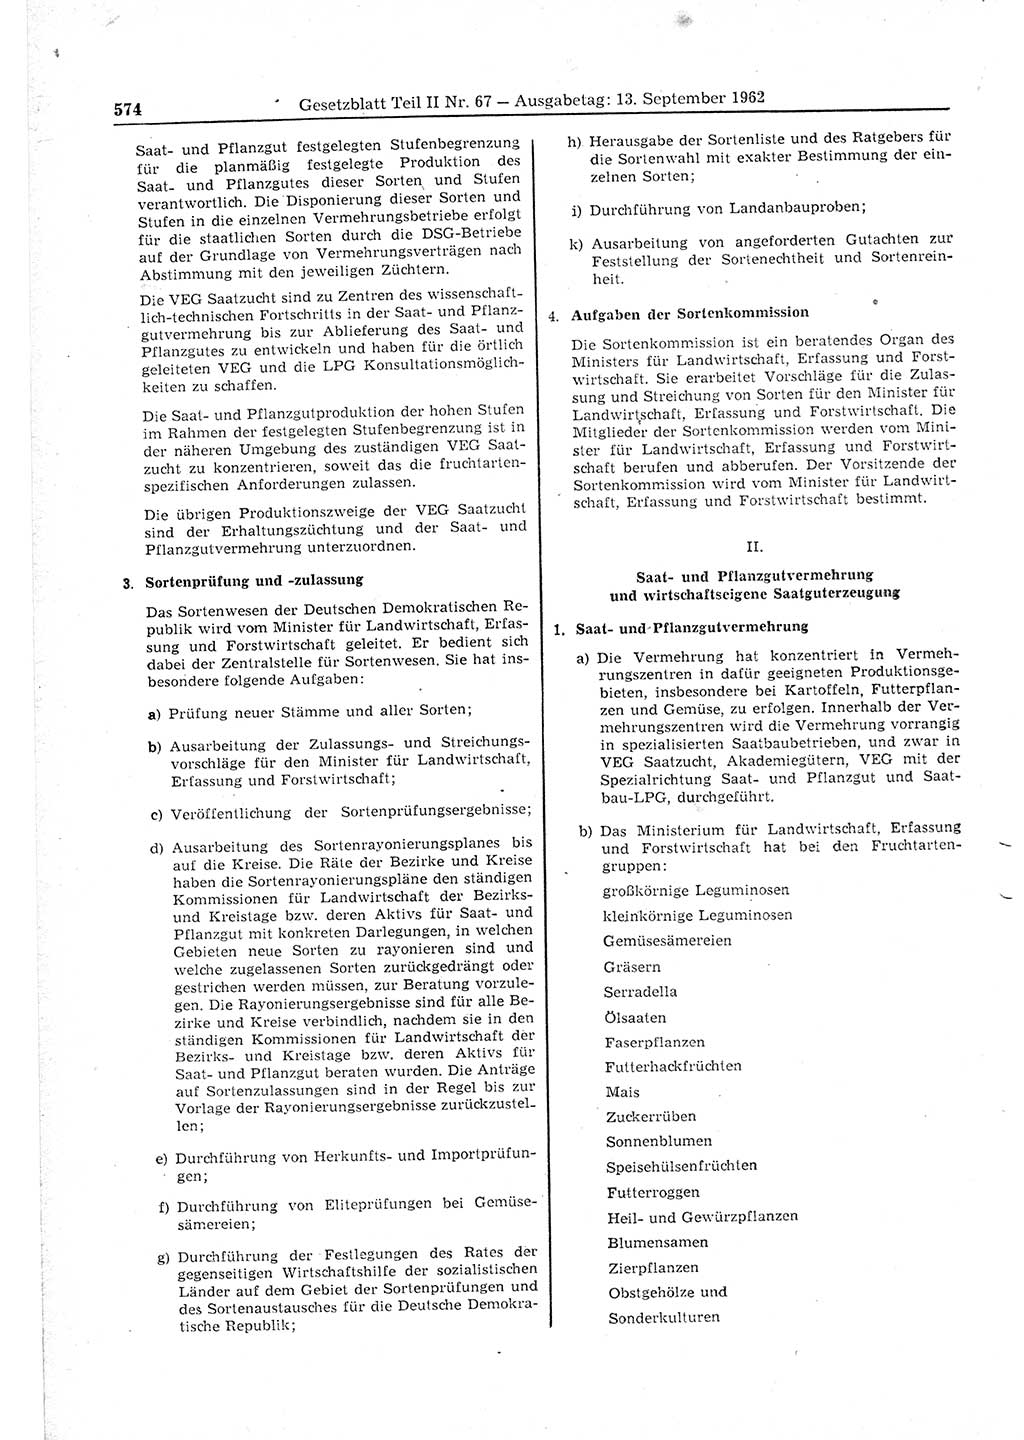 Gesetzblatt (GBl.) der Deutschen Demokratischen Republik (DDR) Teil ⅠⅠ 1962, Seite 574 (GBl. DDR ⅠⅠ 1962, S. 574)